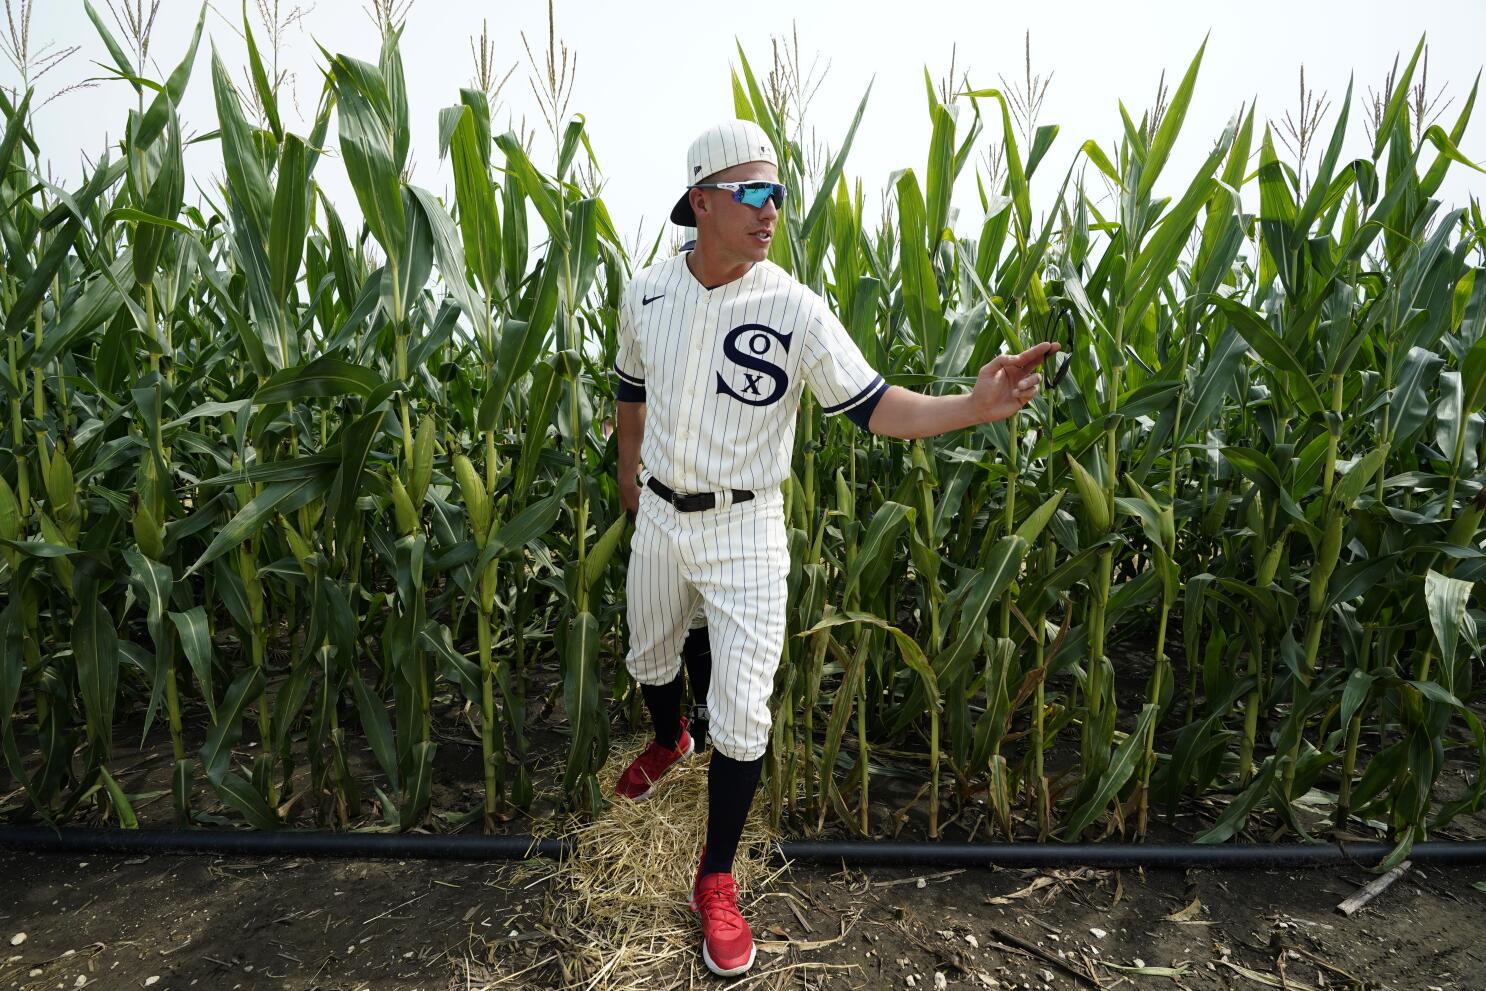 Field of Dreams Movie Site: Baseball Heaven in an Iowa Cornfield